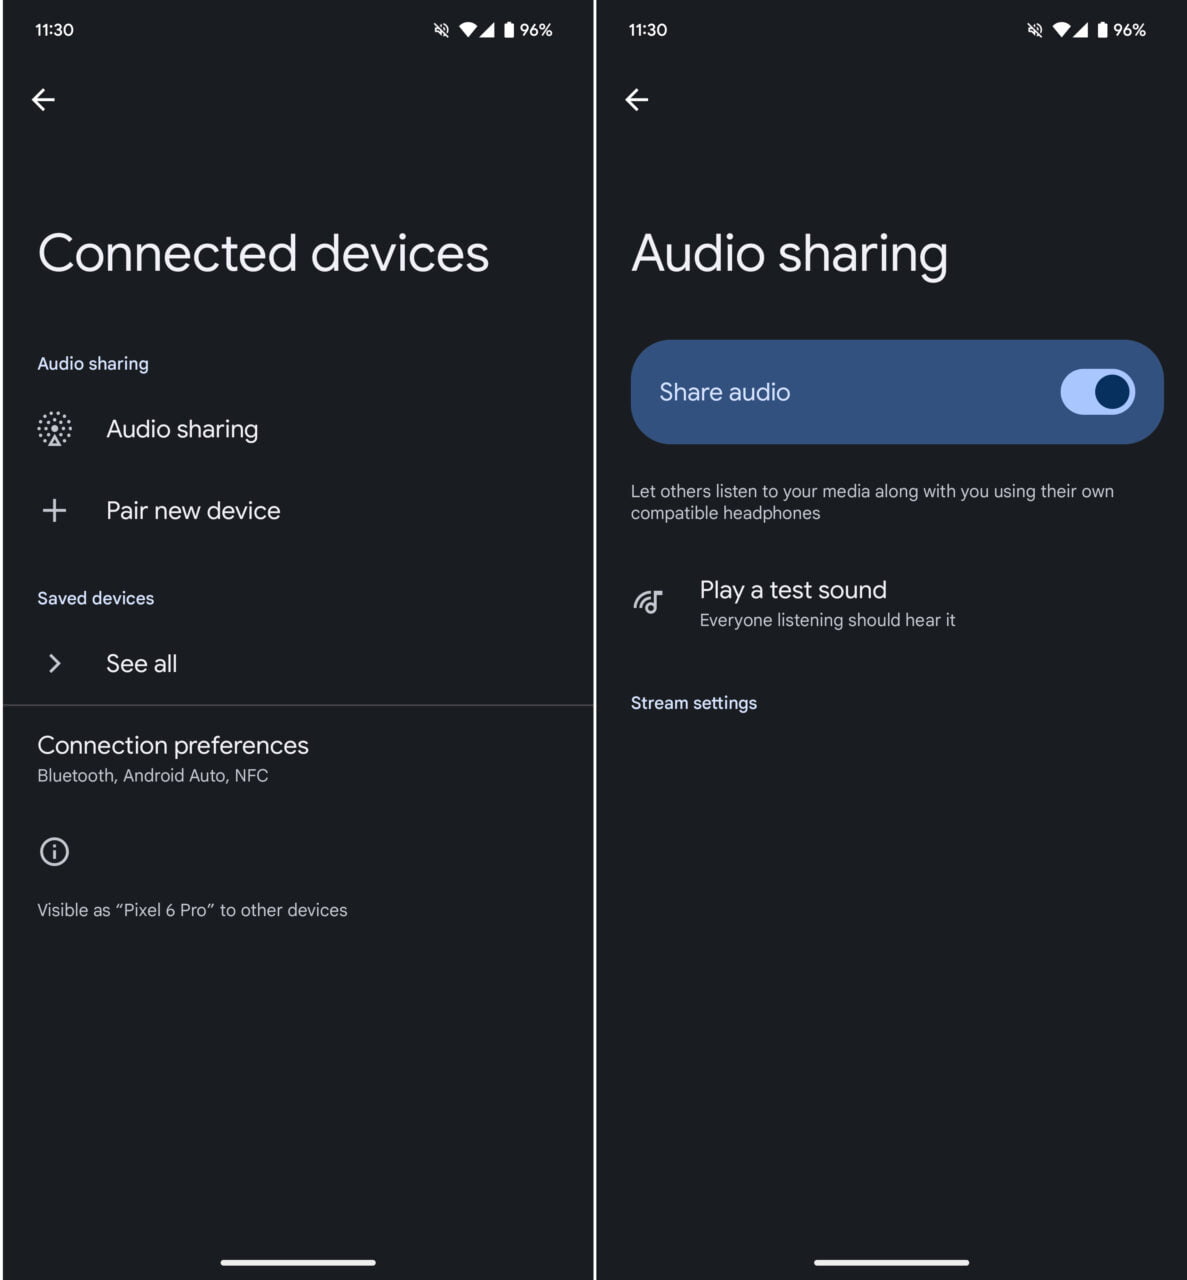 Funkcja Audio Sharing w Android 15 wykorzystująca Bluetooth. Zrzut ekranu interfejsu ustawień smartfona przedstawiający dwa ekrany: po lewej "Połączone urządzenia" z opcjami dotyczącymi udostępniania audio, parowania nowych urządzeń i preferencji połączenia, po prawej włączona funkcja "Udostępnianie audio" z możliwością współdzielenia dźwięku i odtworzenia testowego dźwięku.